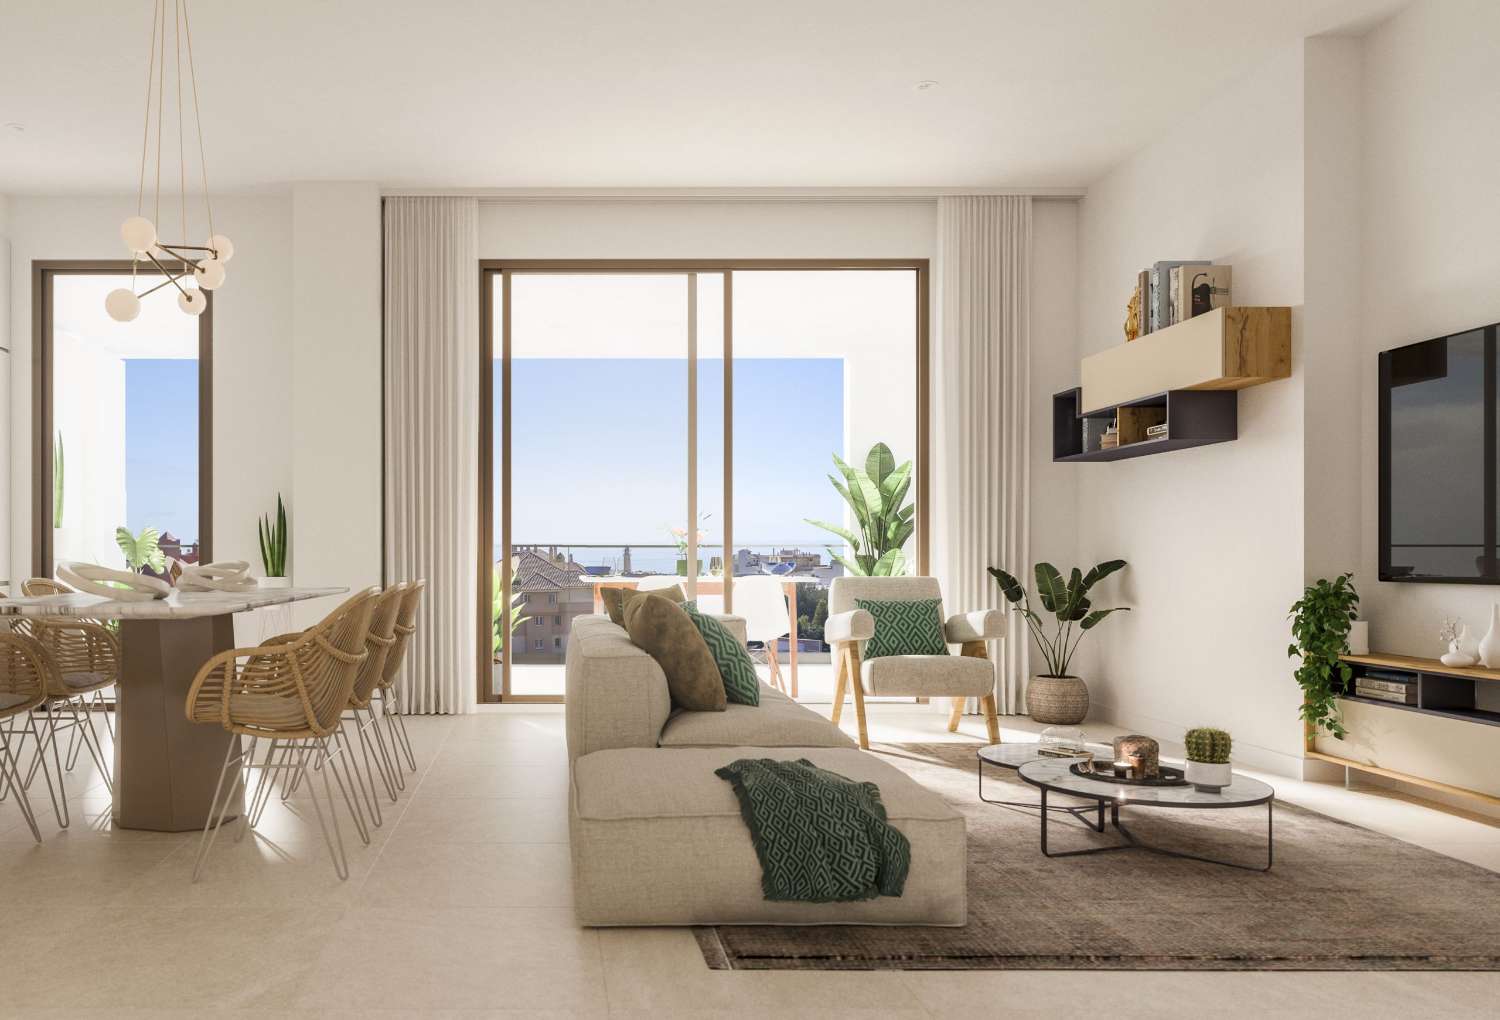 2 of 3 slaapkamers, 2 badkamers en een terras met uitzicht op zee – vanaf € 218.000